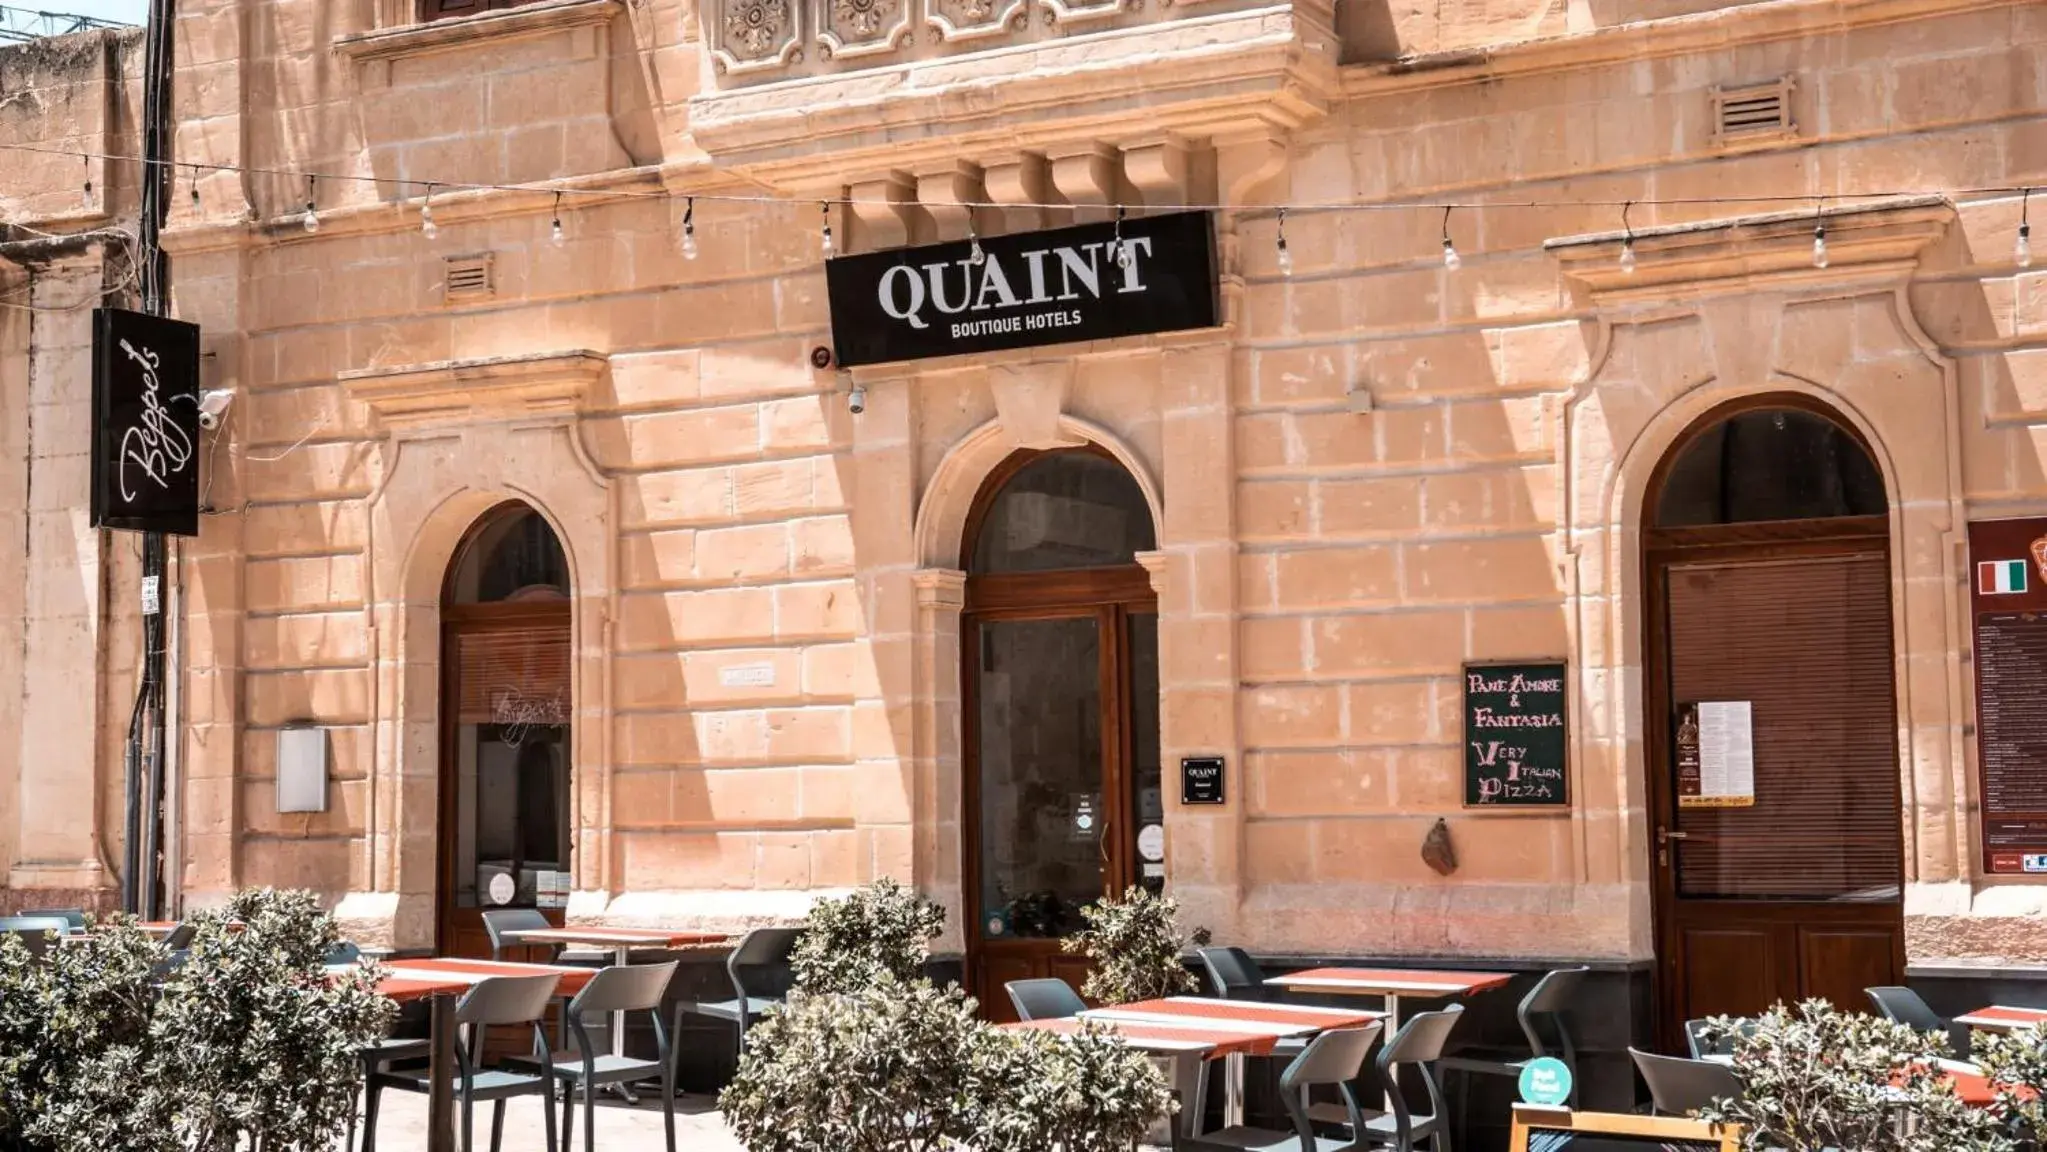 Property building, Restaurant/Places to Eat in Quaint Boutique Hotel Sannat